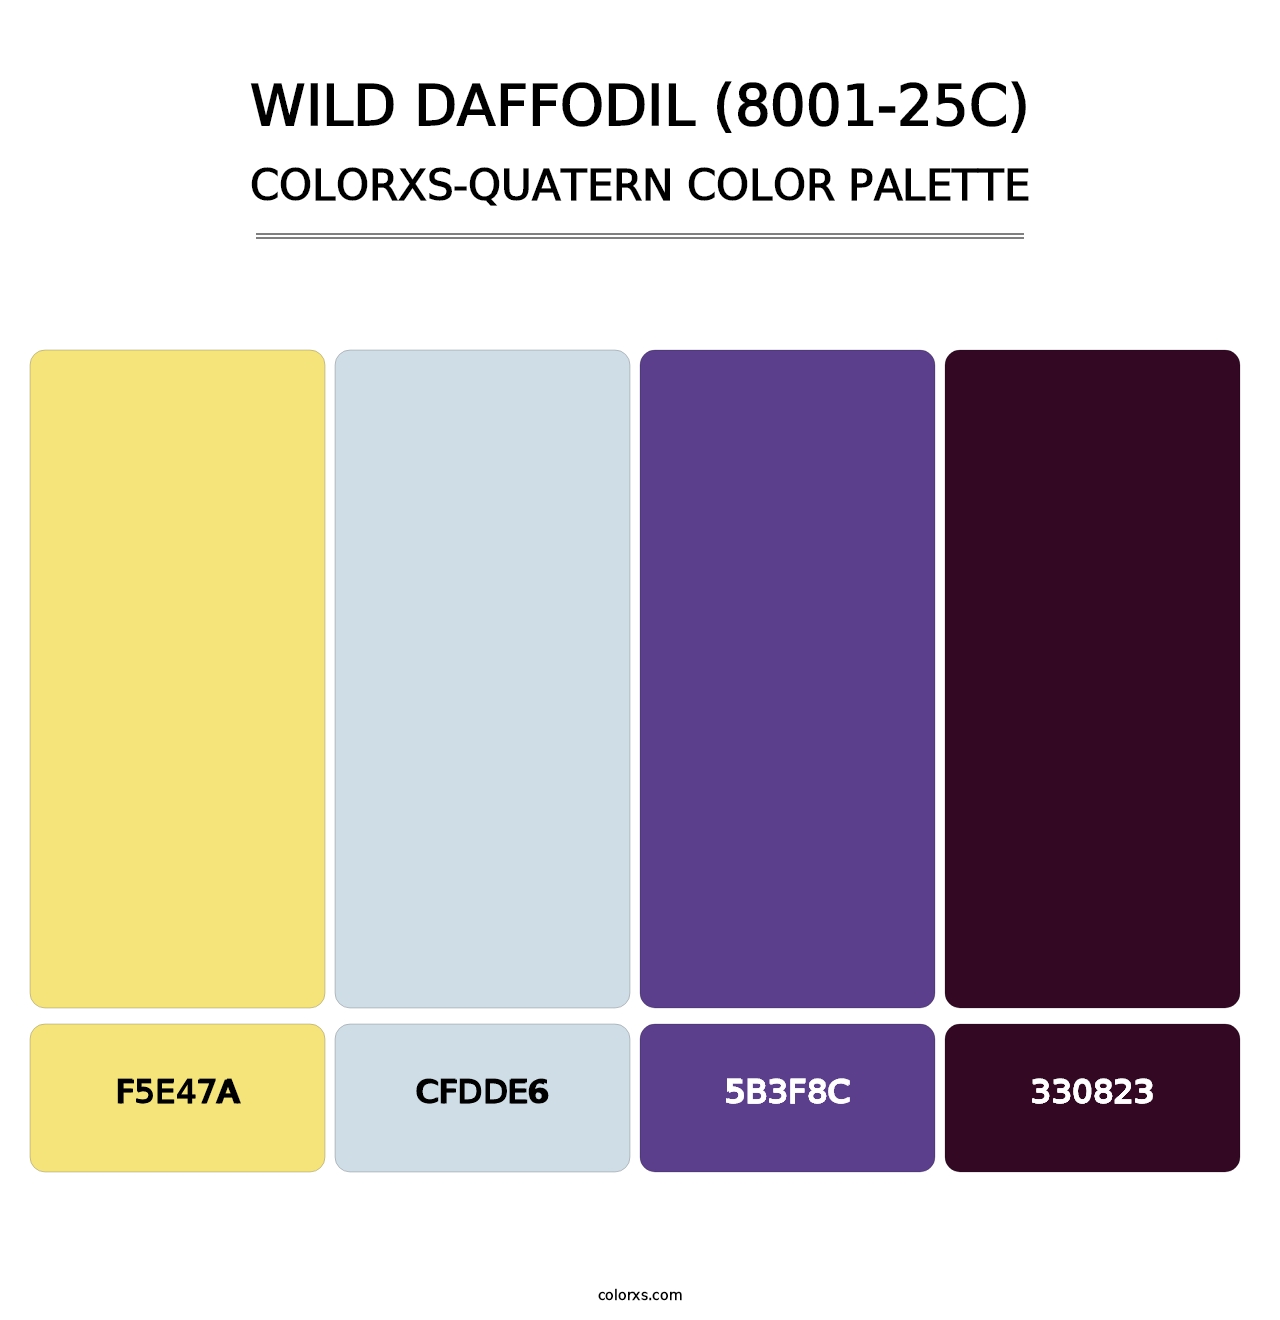 Wild Daffodil (8001-25C) - Colorxs Quatern Palette